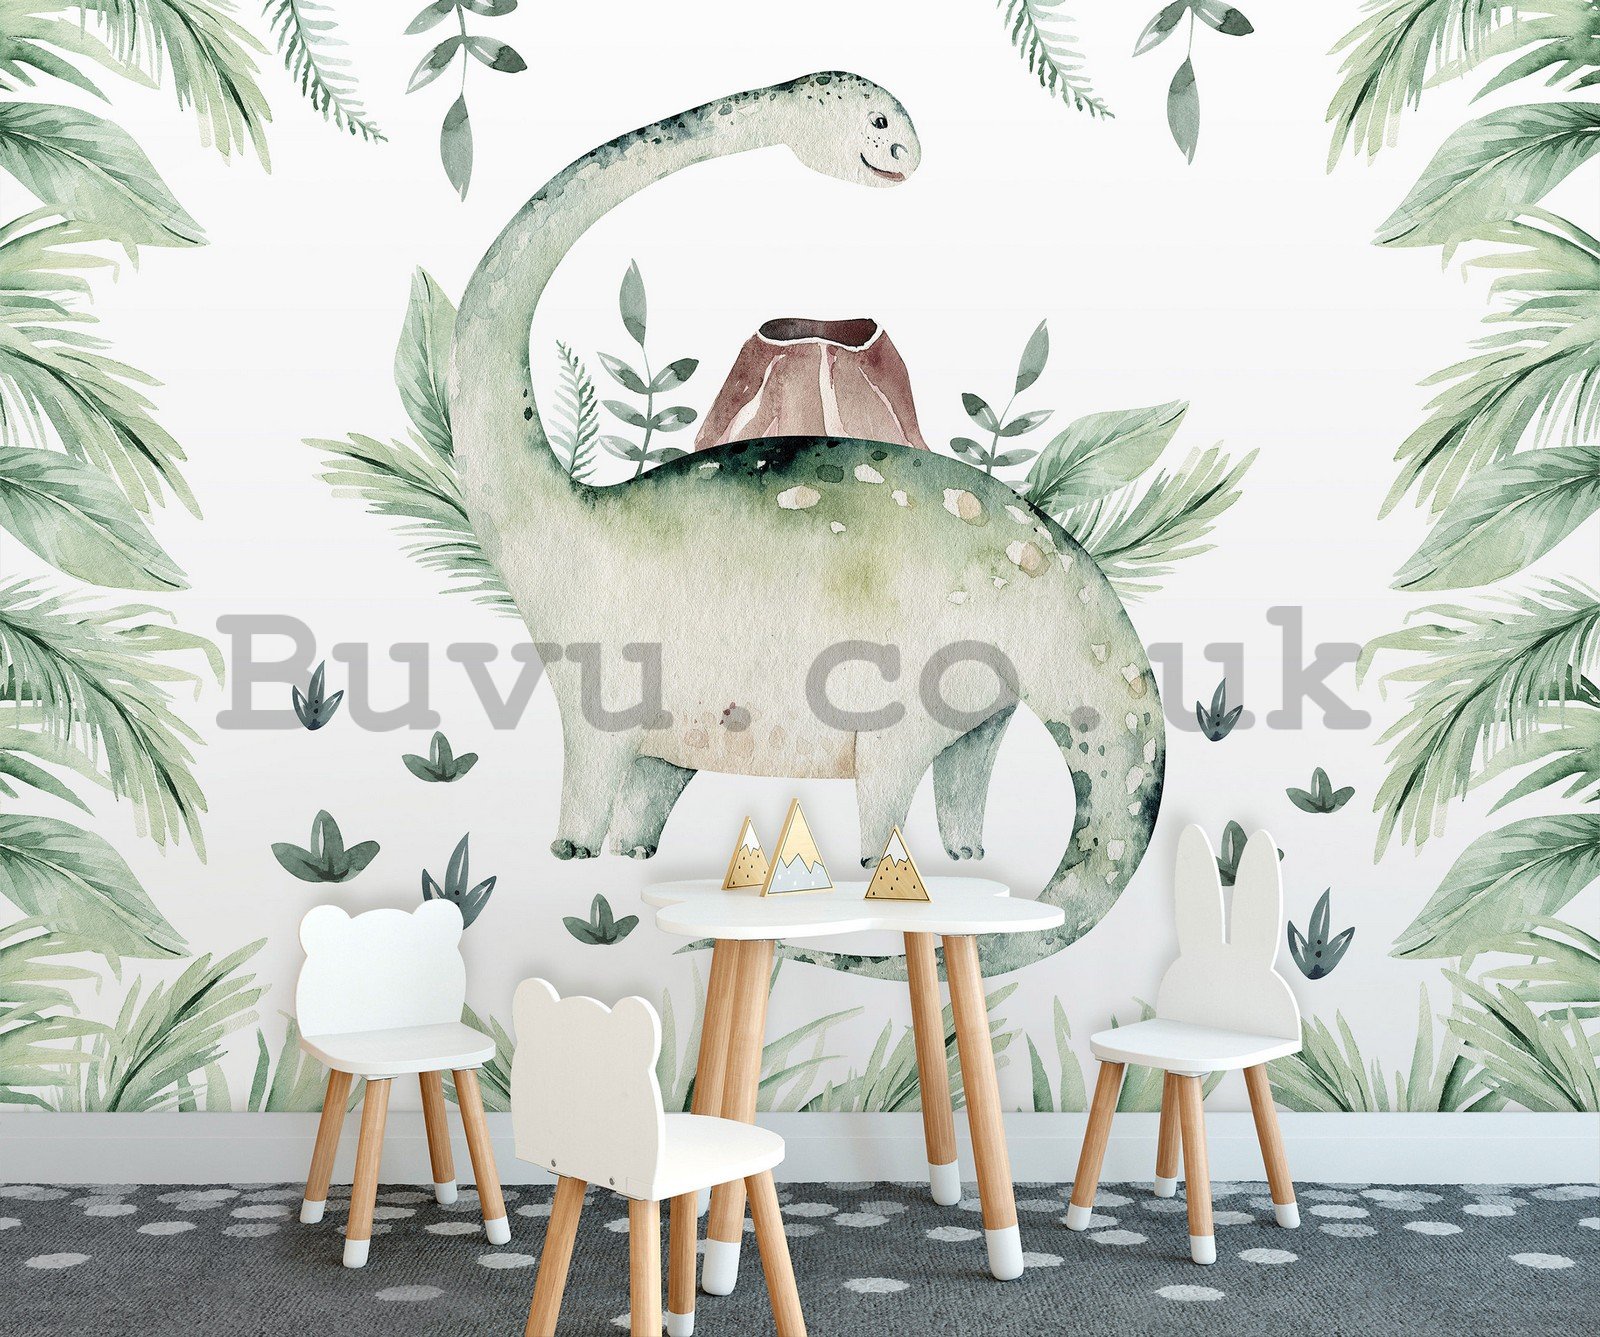 Wall mural vlies: Dinosaur in ferns - 416x254 cm